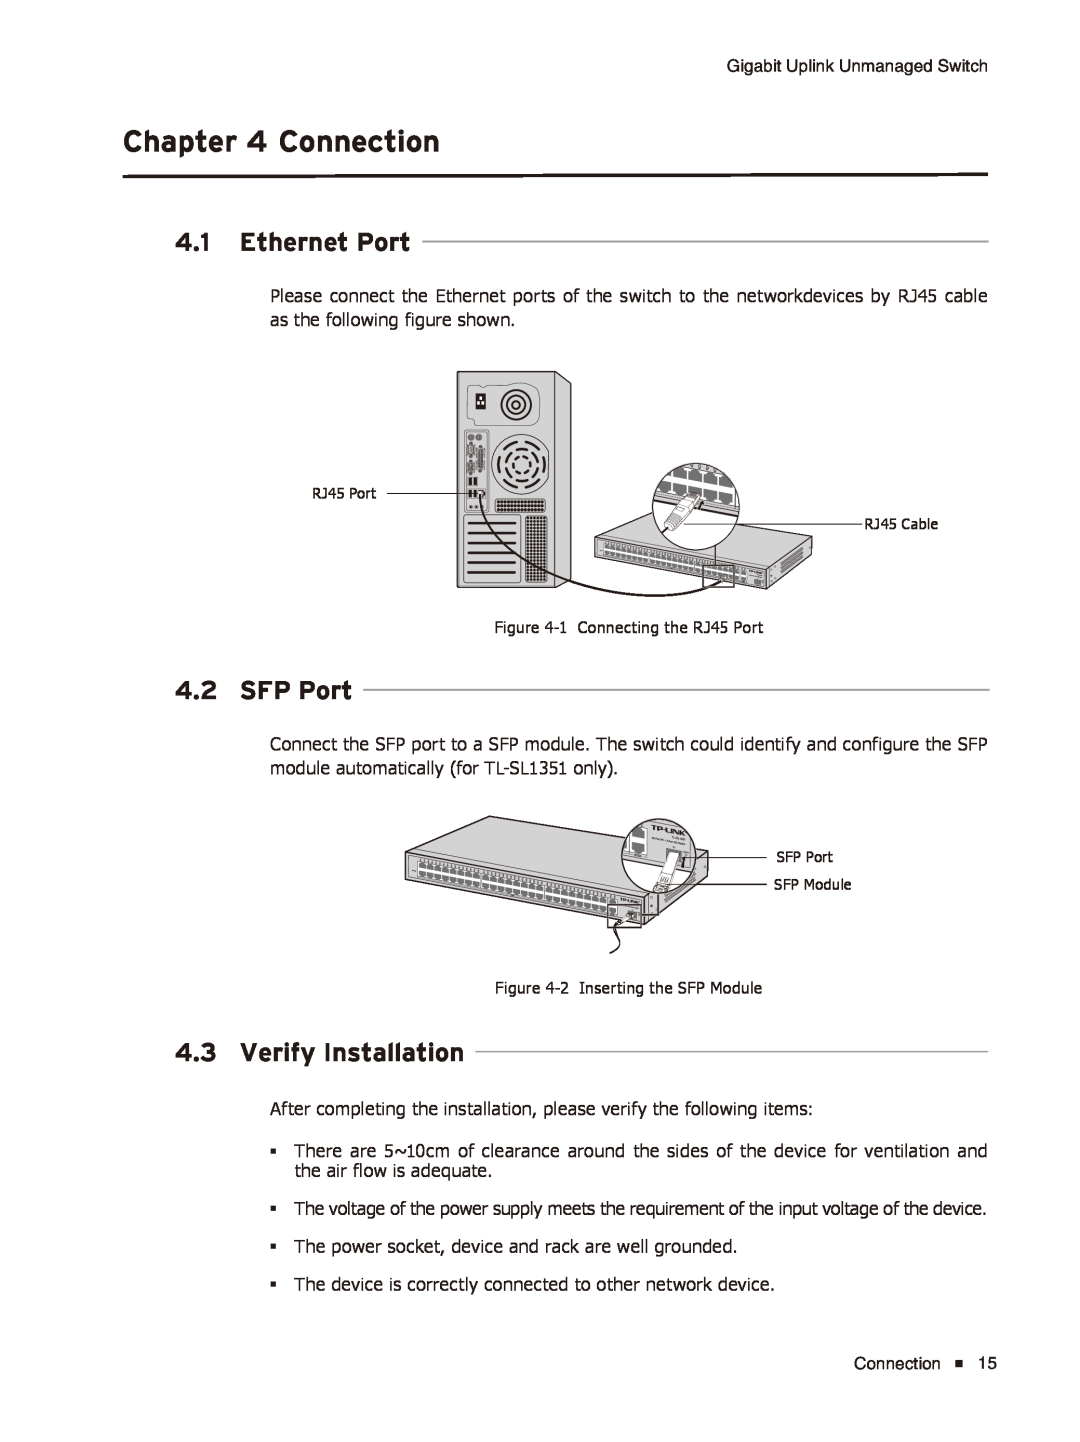 TP-Link TL-SL1226/TL-SL1351 manual Connection, Ethernet Port, SFP Port, Verify Installation 